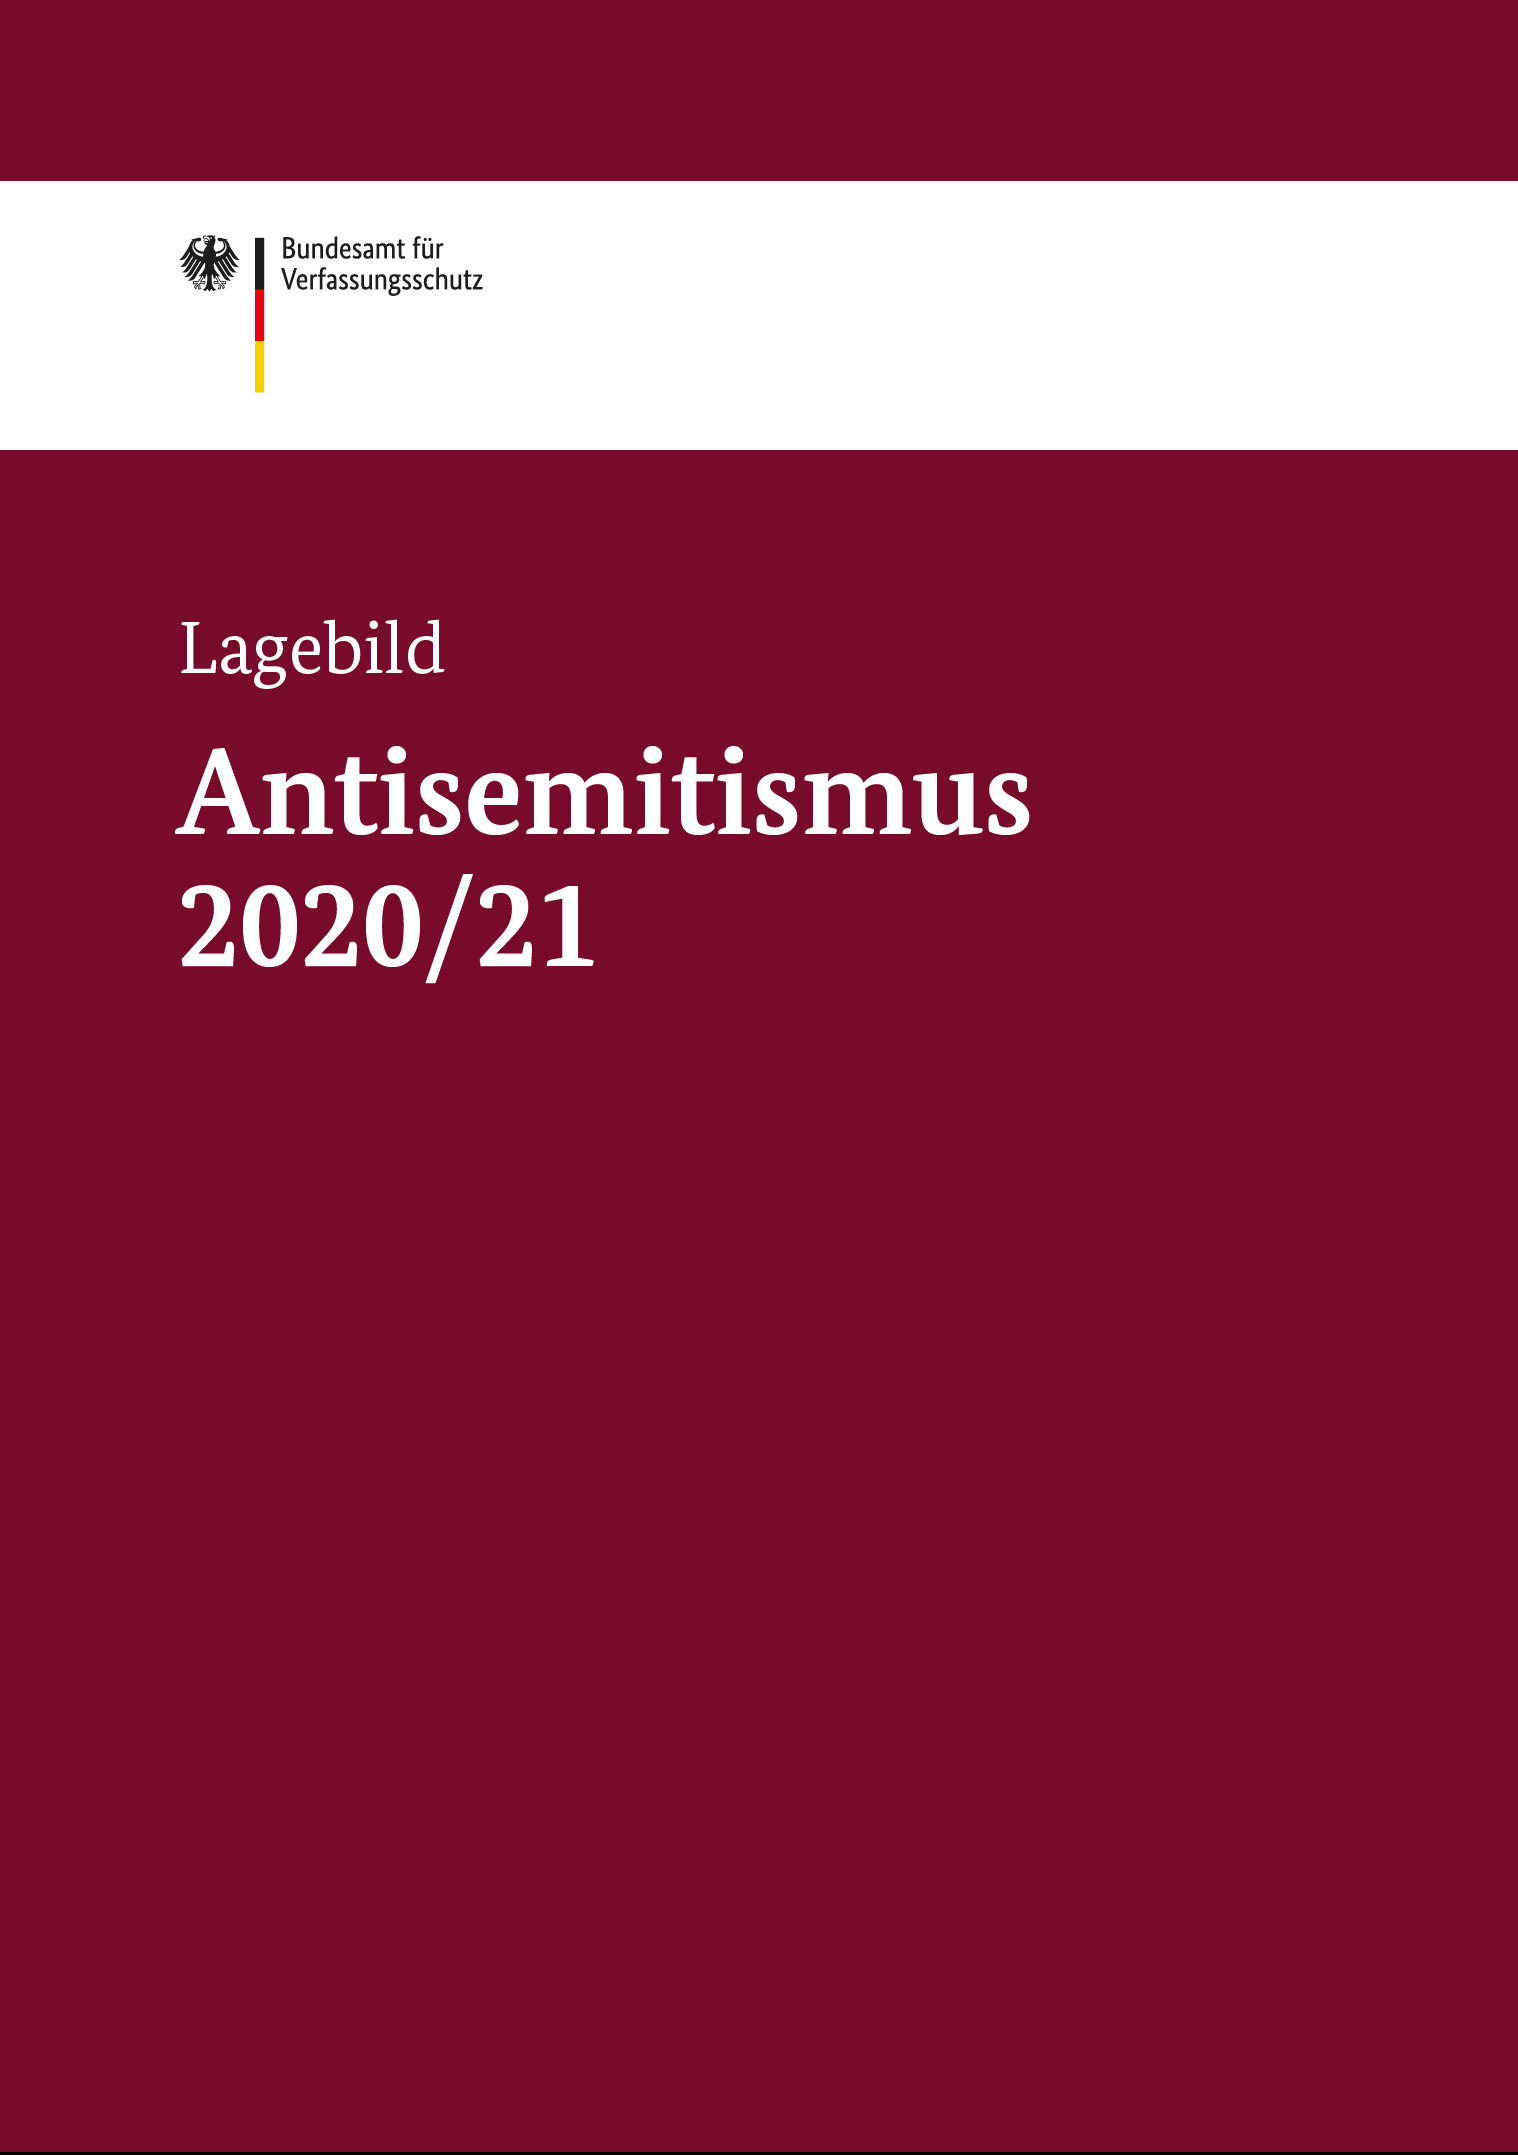 Das Bild zeigt das Deckblatt der Publikation „Lagebild Antisemitismus 2020/21“.